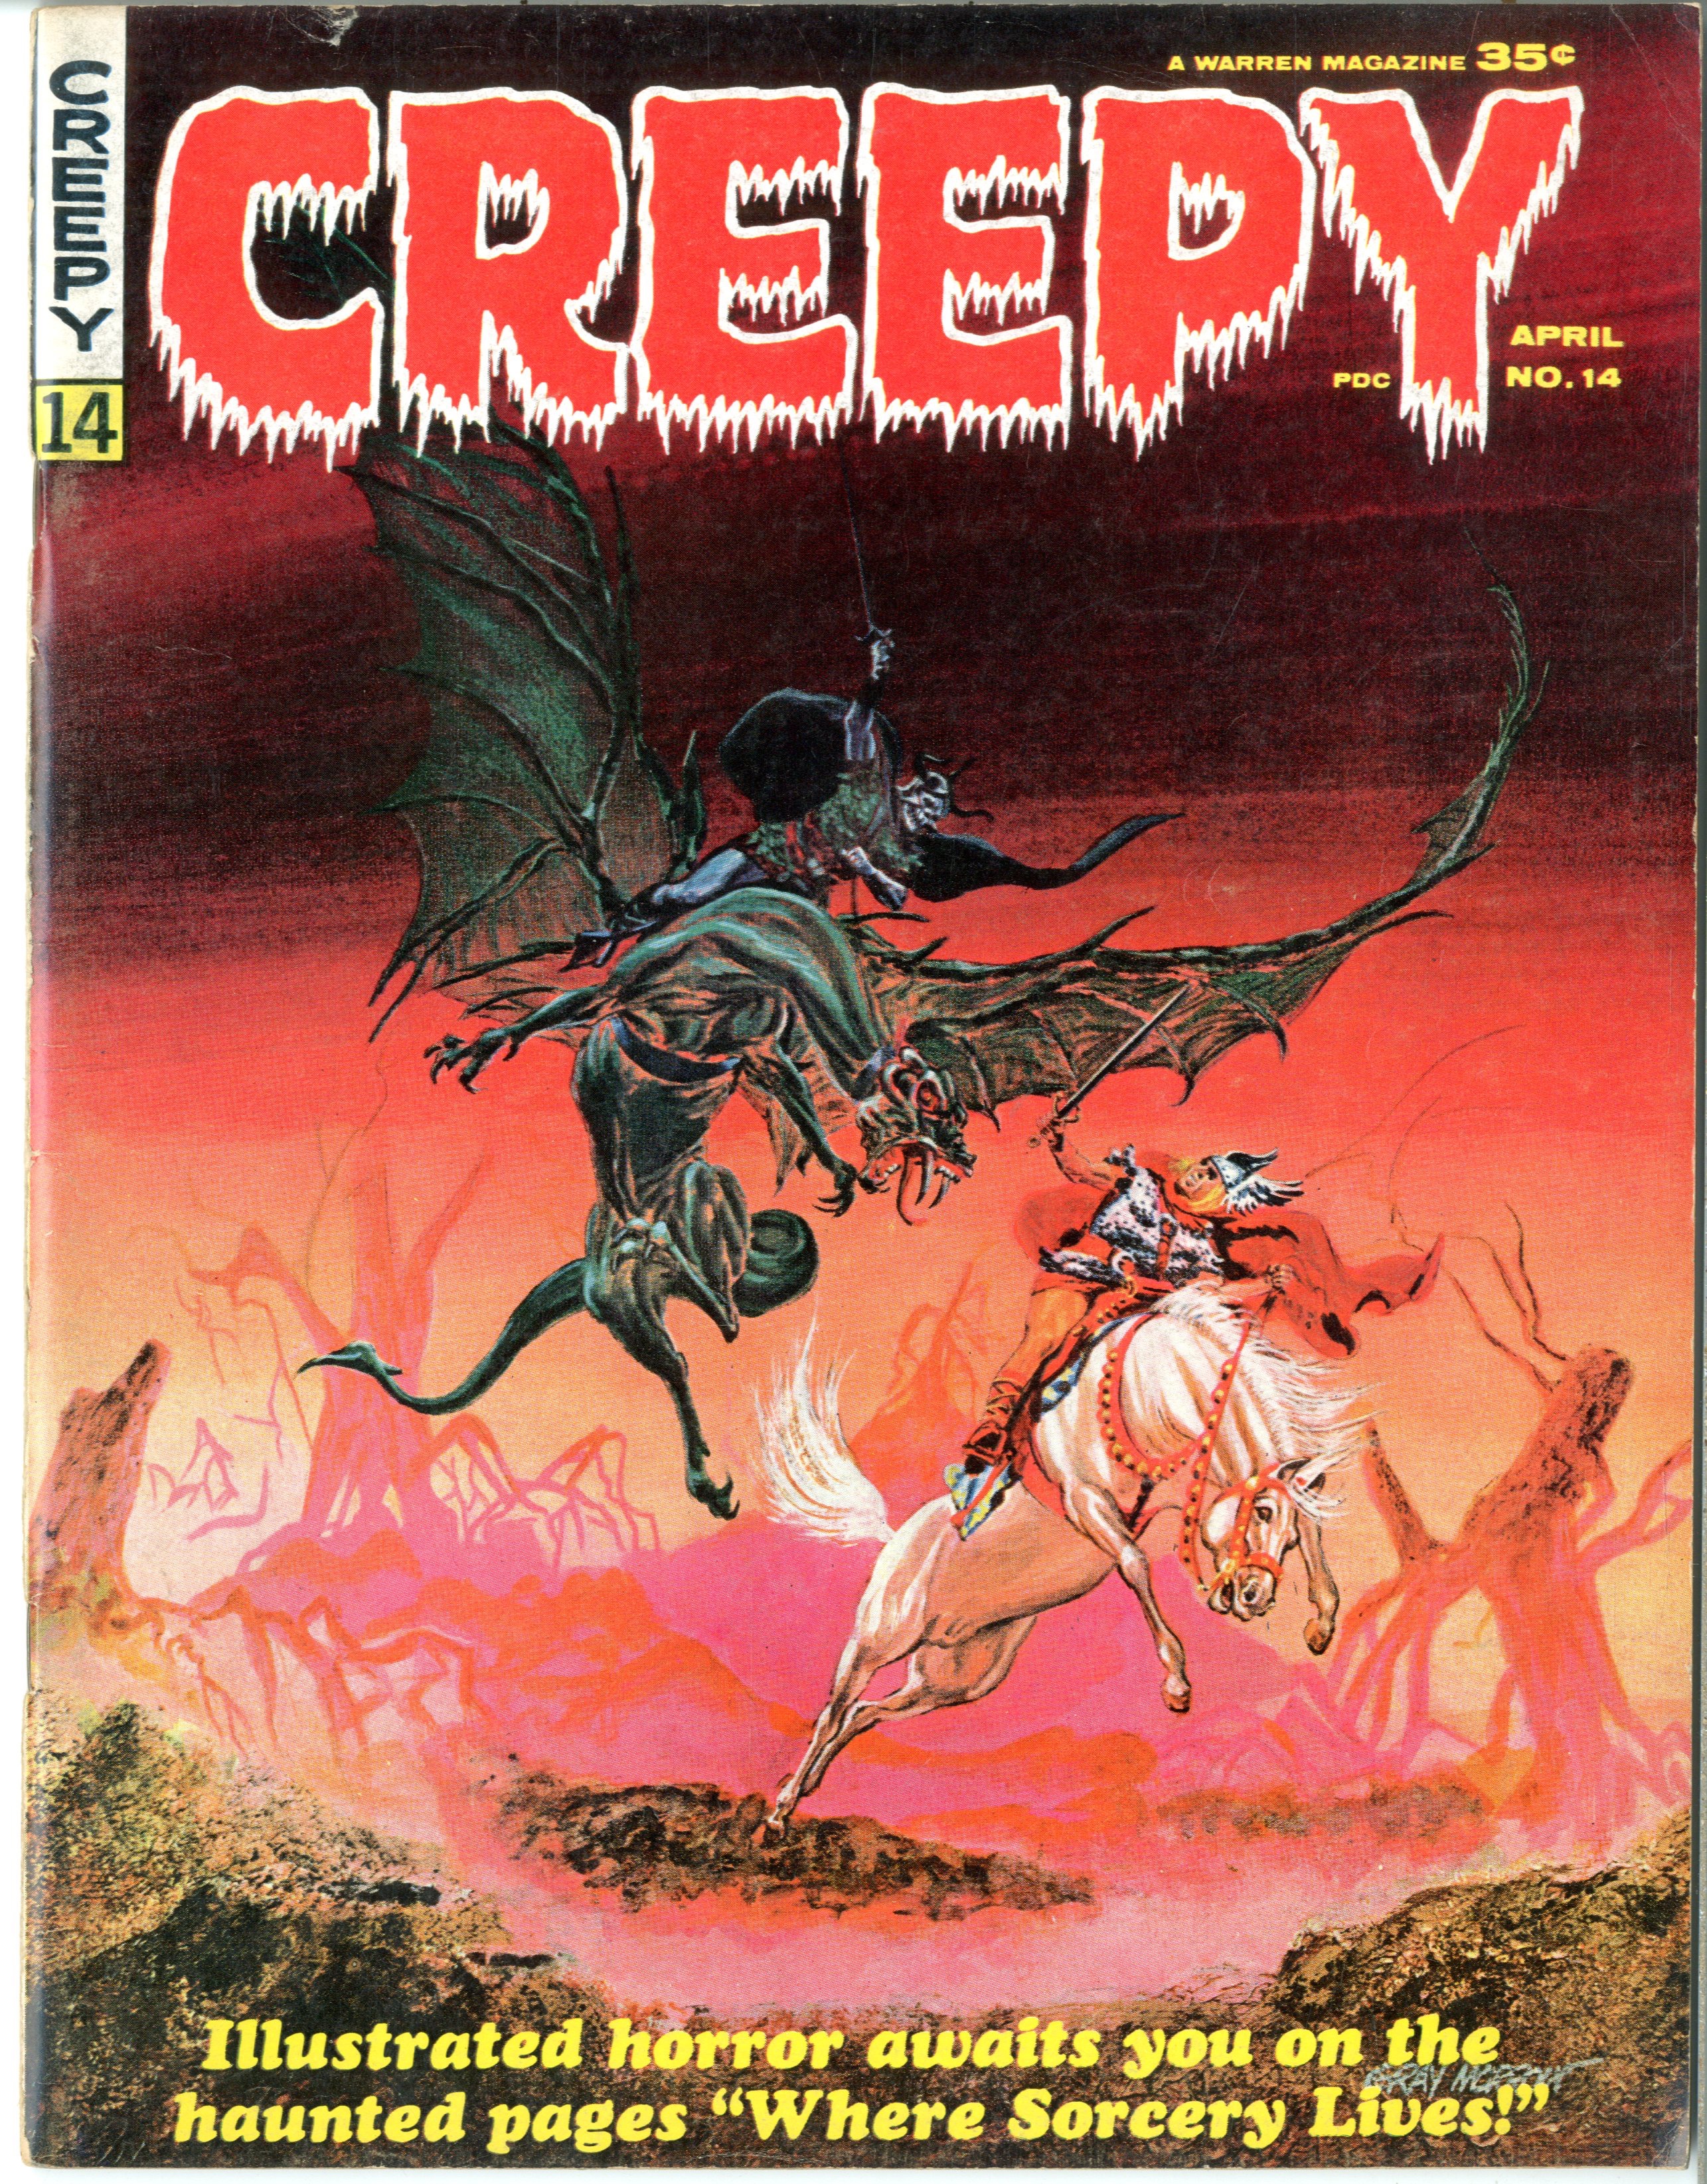 Creepy - Primary